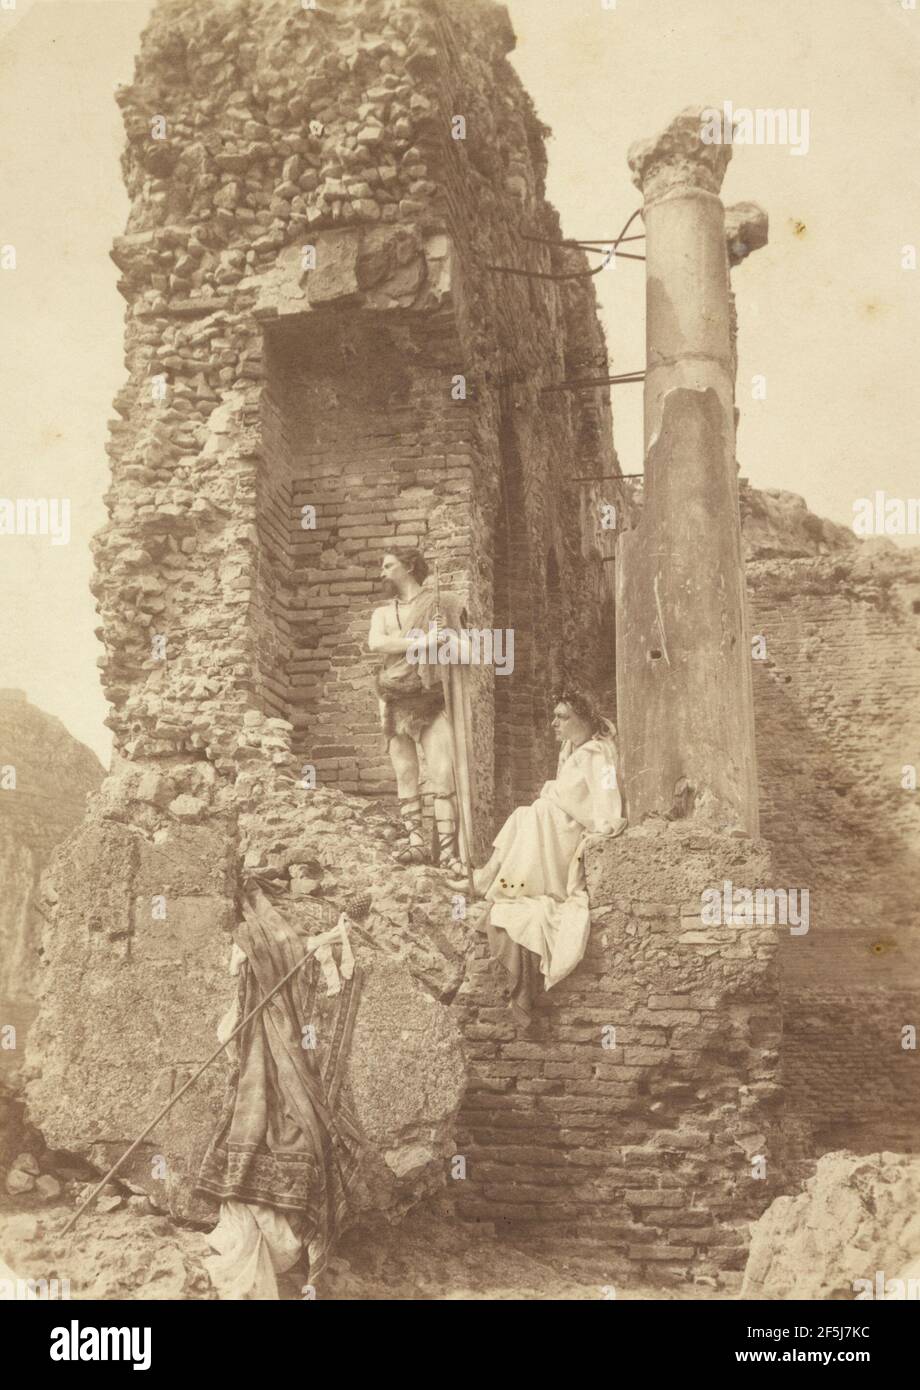 Two Men in costume near ruins. Baron Wilhelm von Gloeden (German, 1856 - 1931) Stock Photo